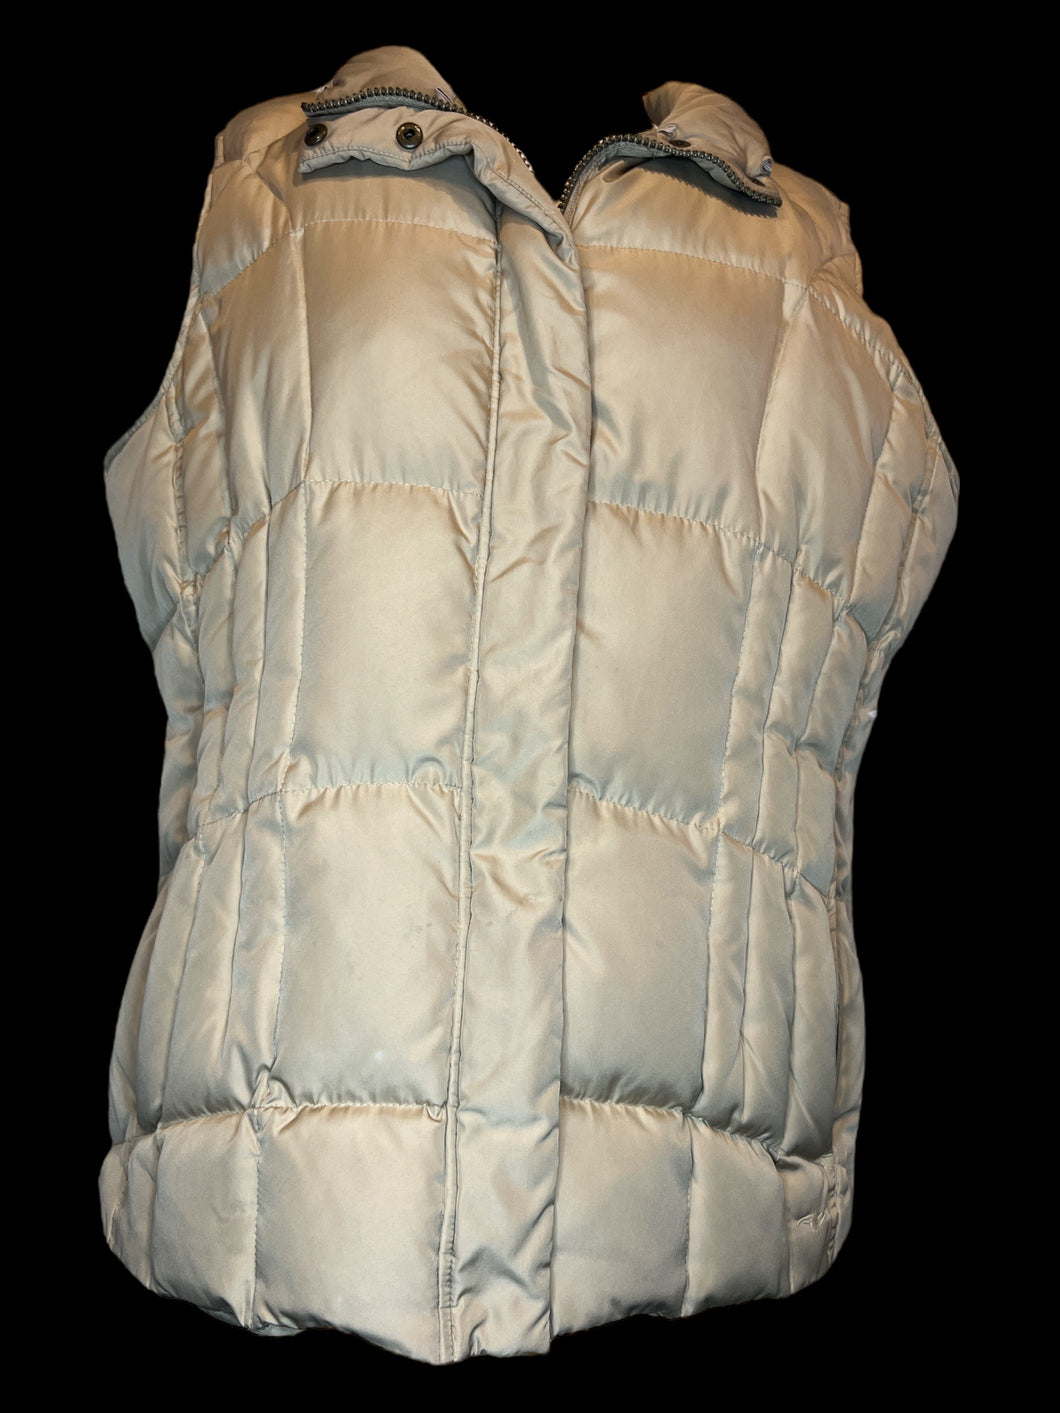 1X Sand brown puffer vest w/ zipper pockets, & zipper & snap front closure